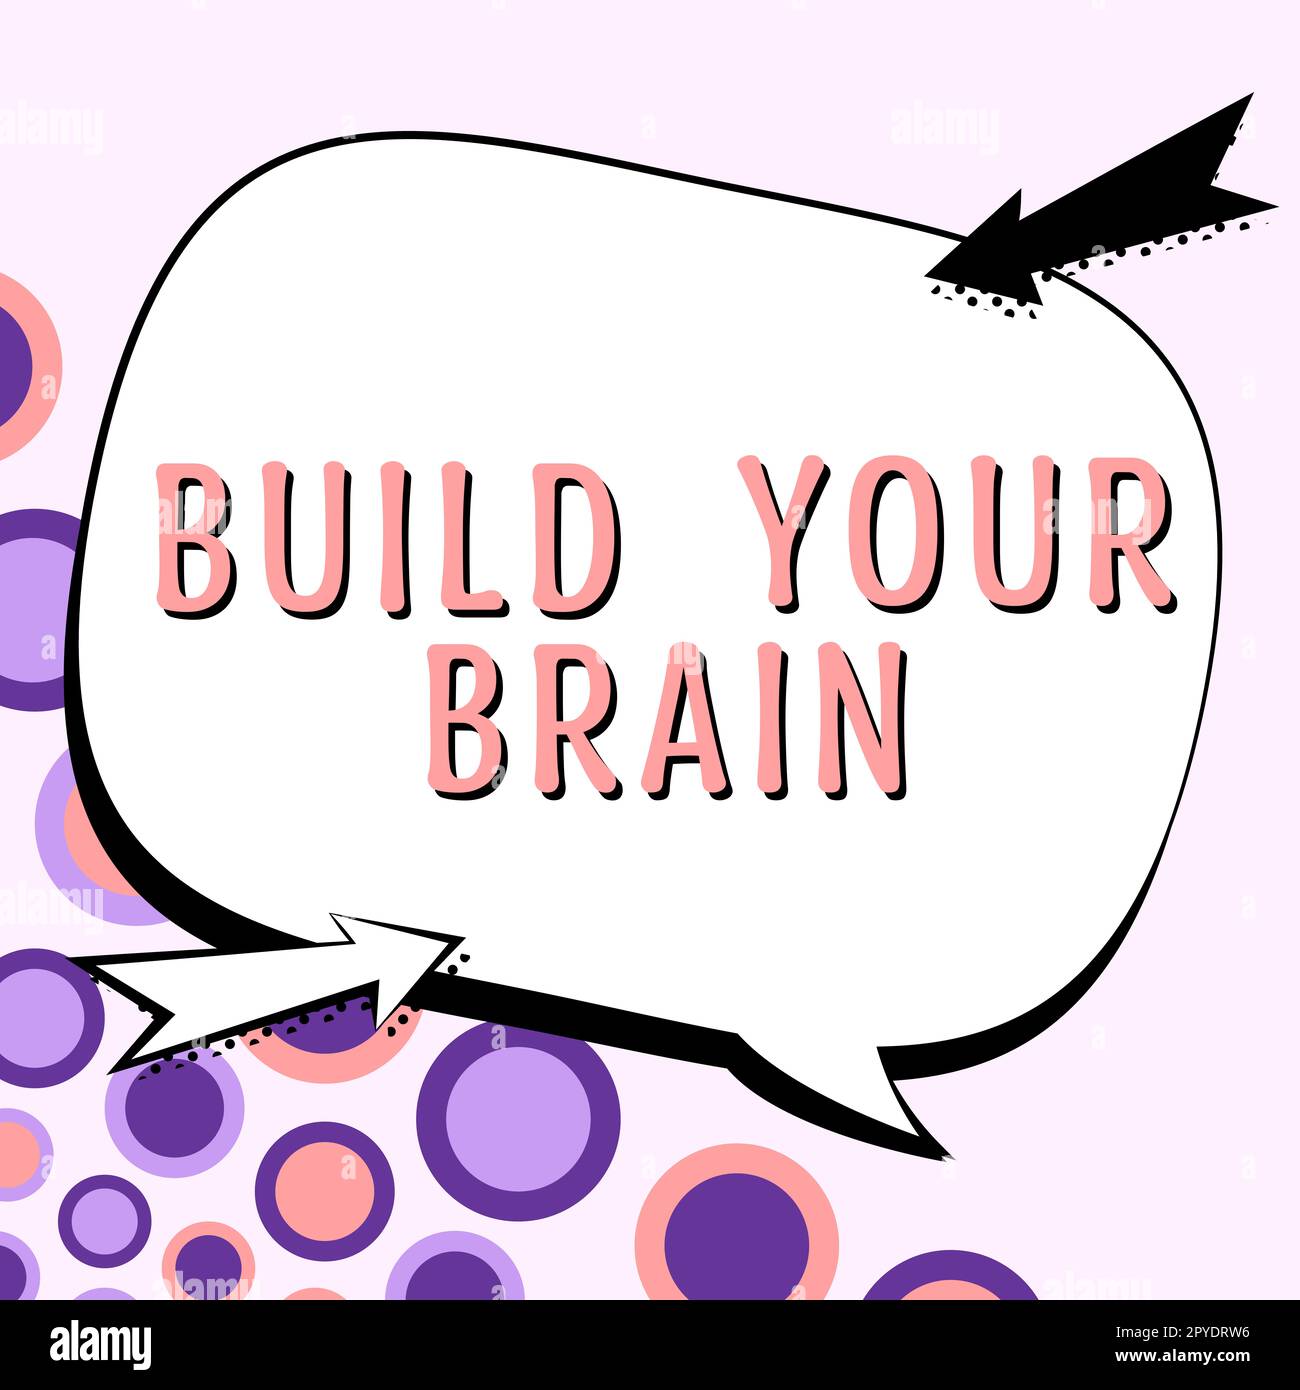 Konzeptionelle Darstellung Bauen Sie Ihr Gehirn. Wort für mentale Aktivitäten, um kognitive Fähigkeiten zu erhalten oder zu verbessern Stockfoto